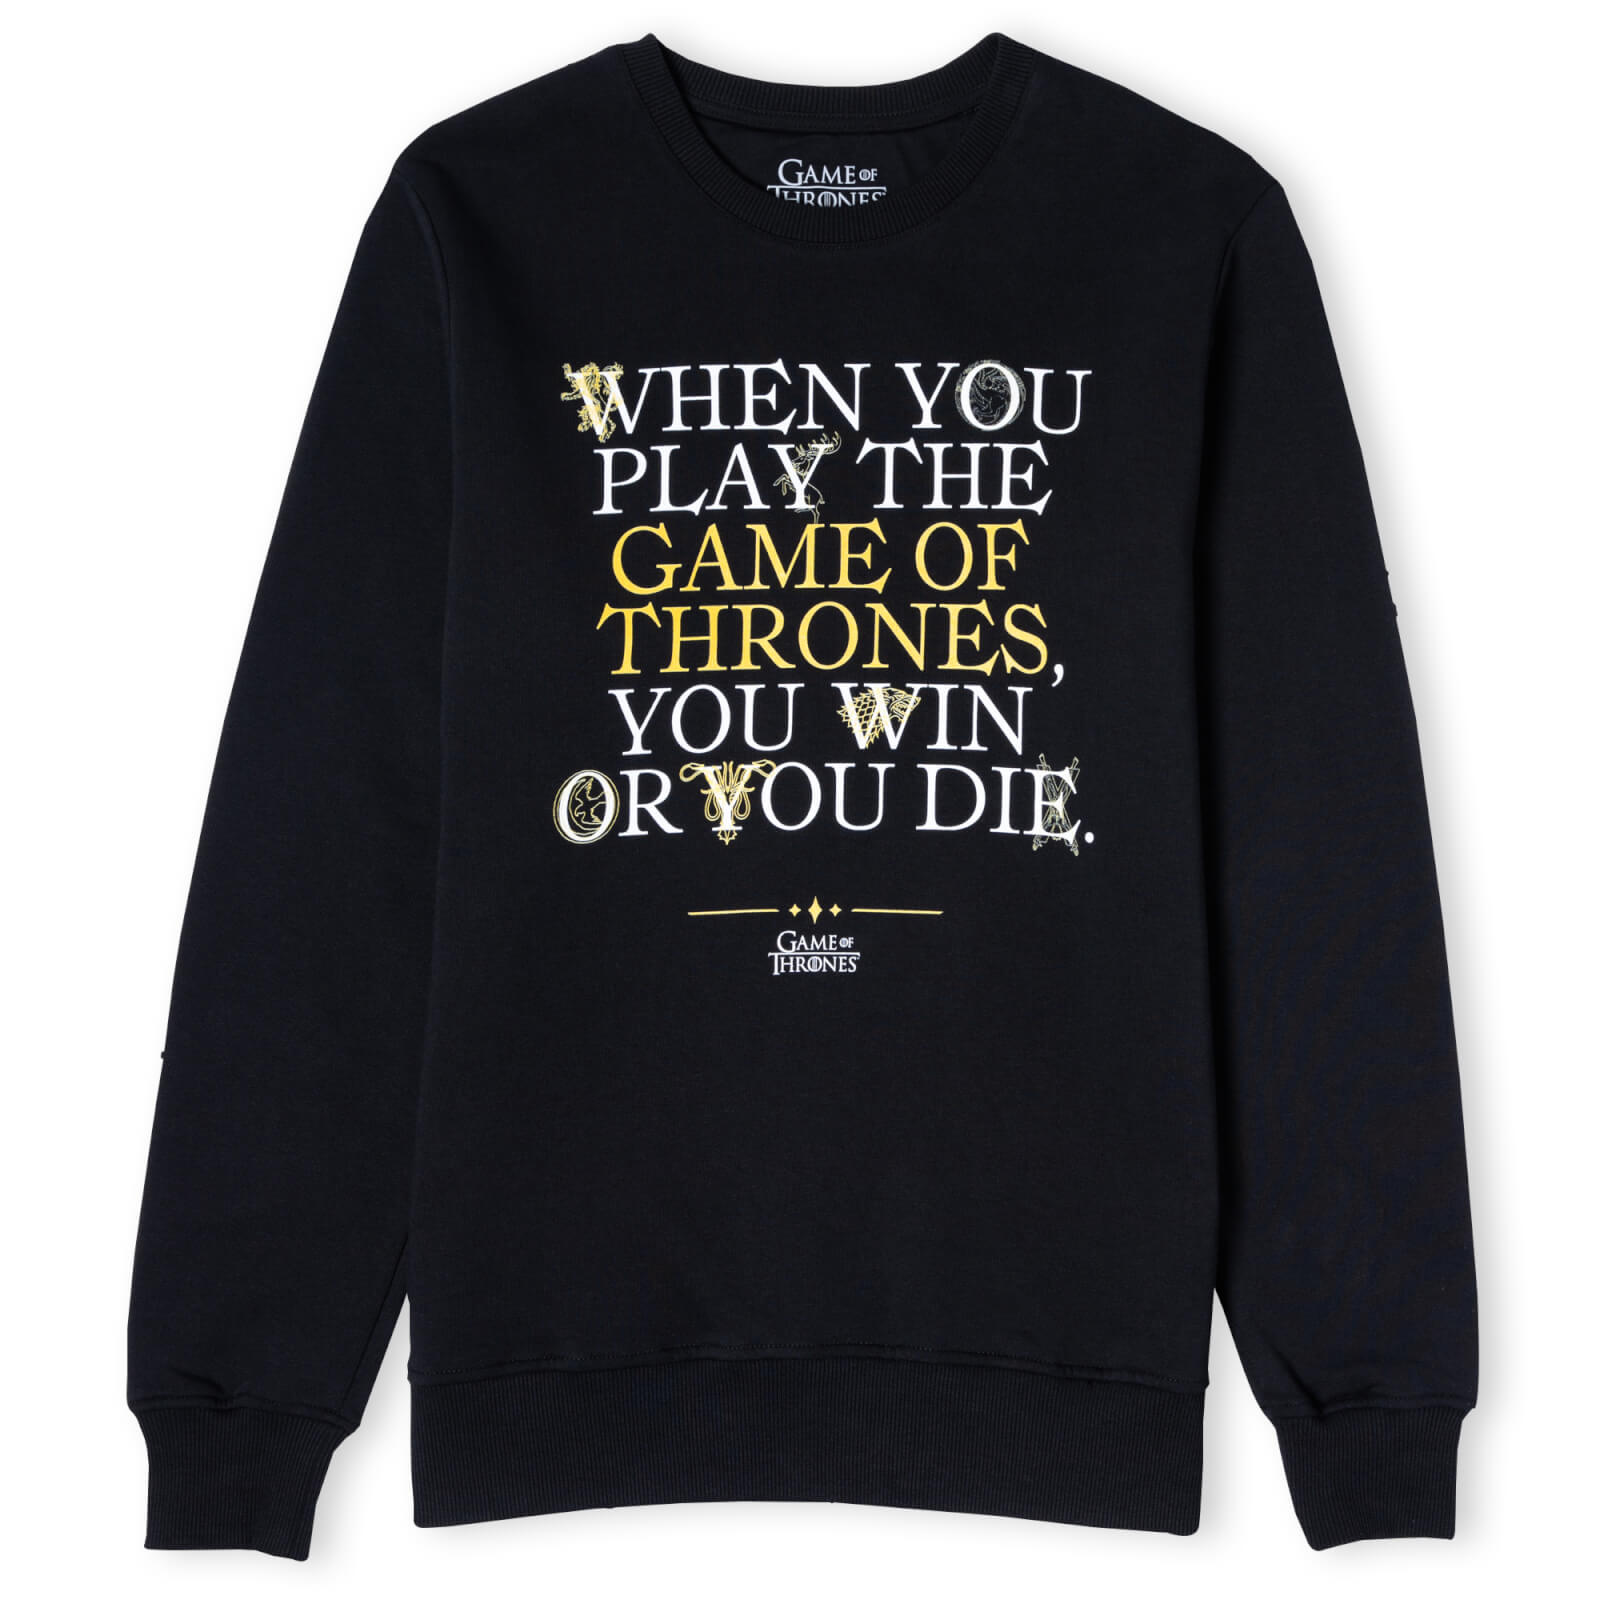 Game of Thrones Win Or Die Unisex Sweatshirt - Black - L - Black